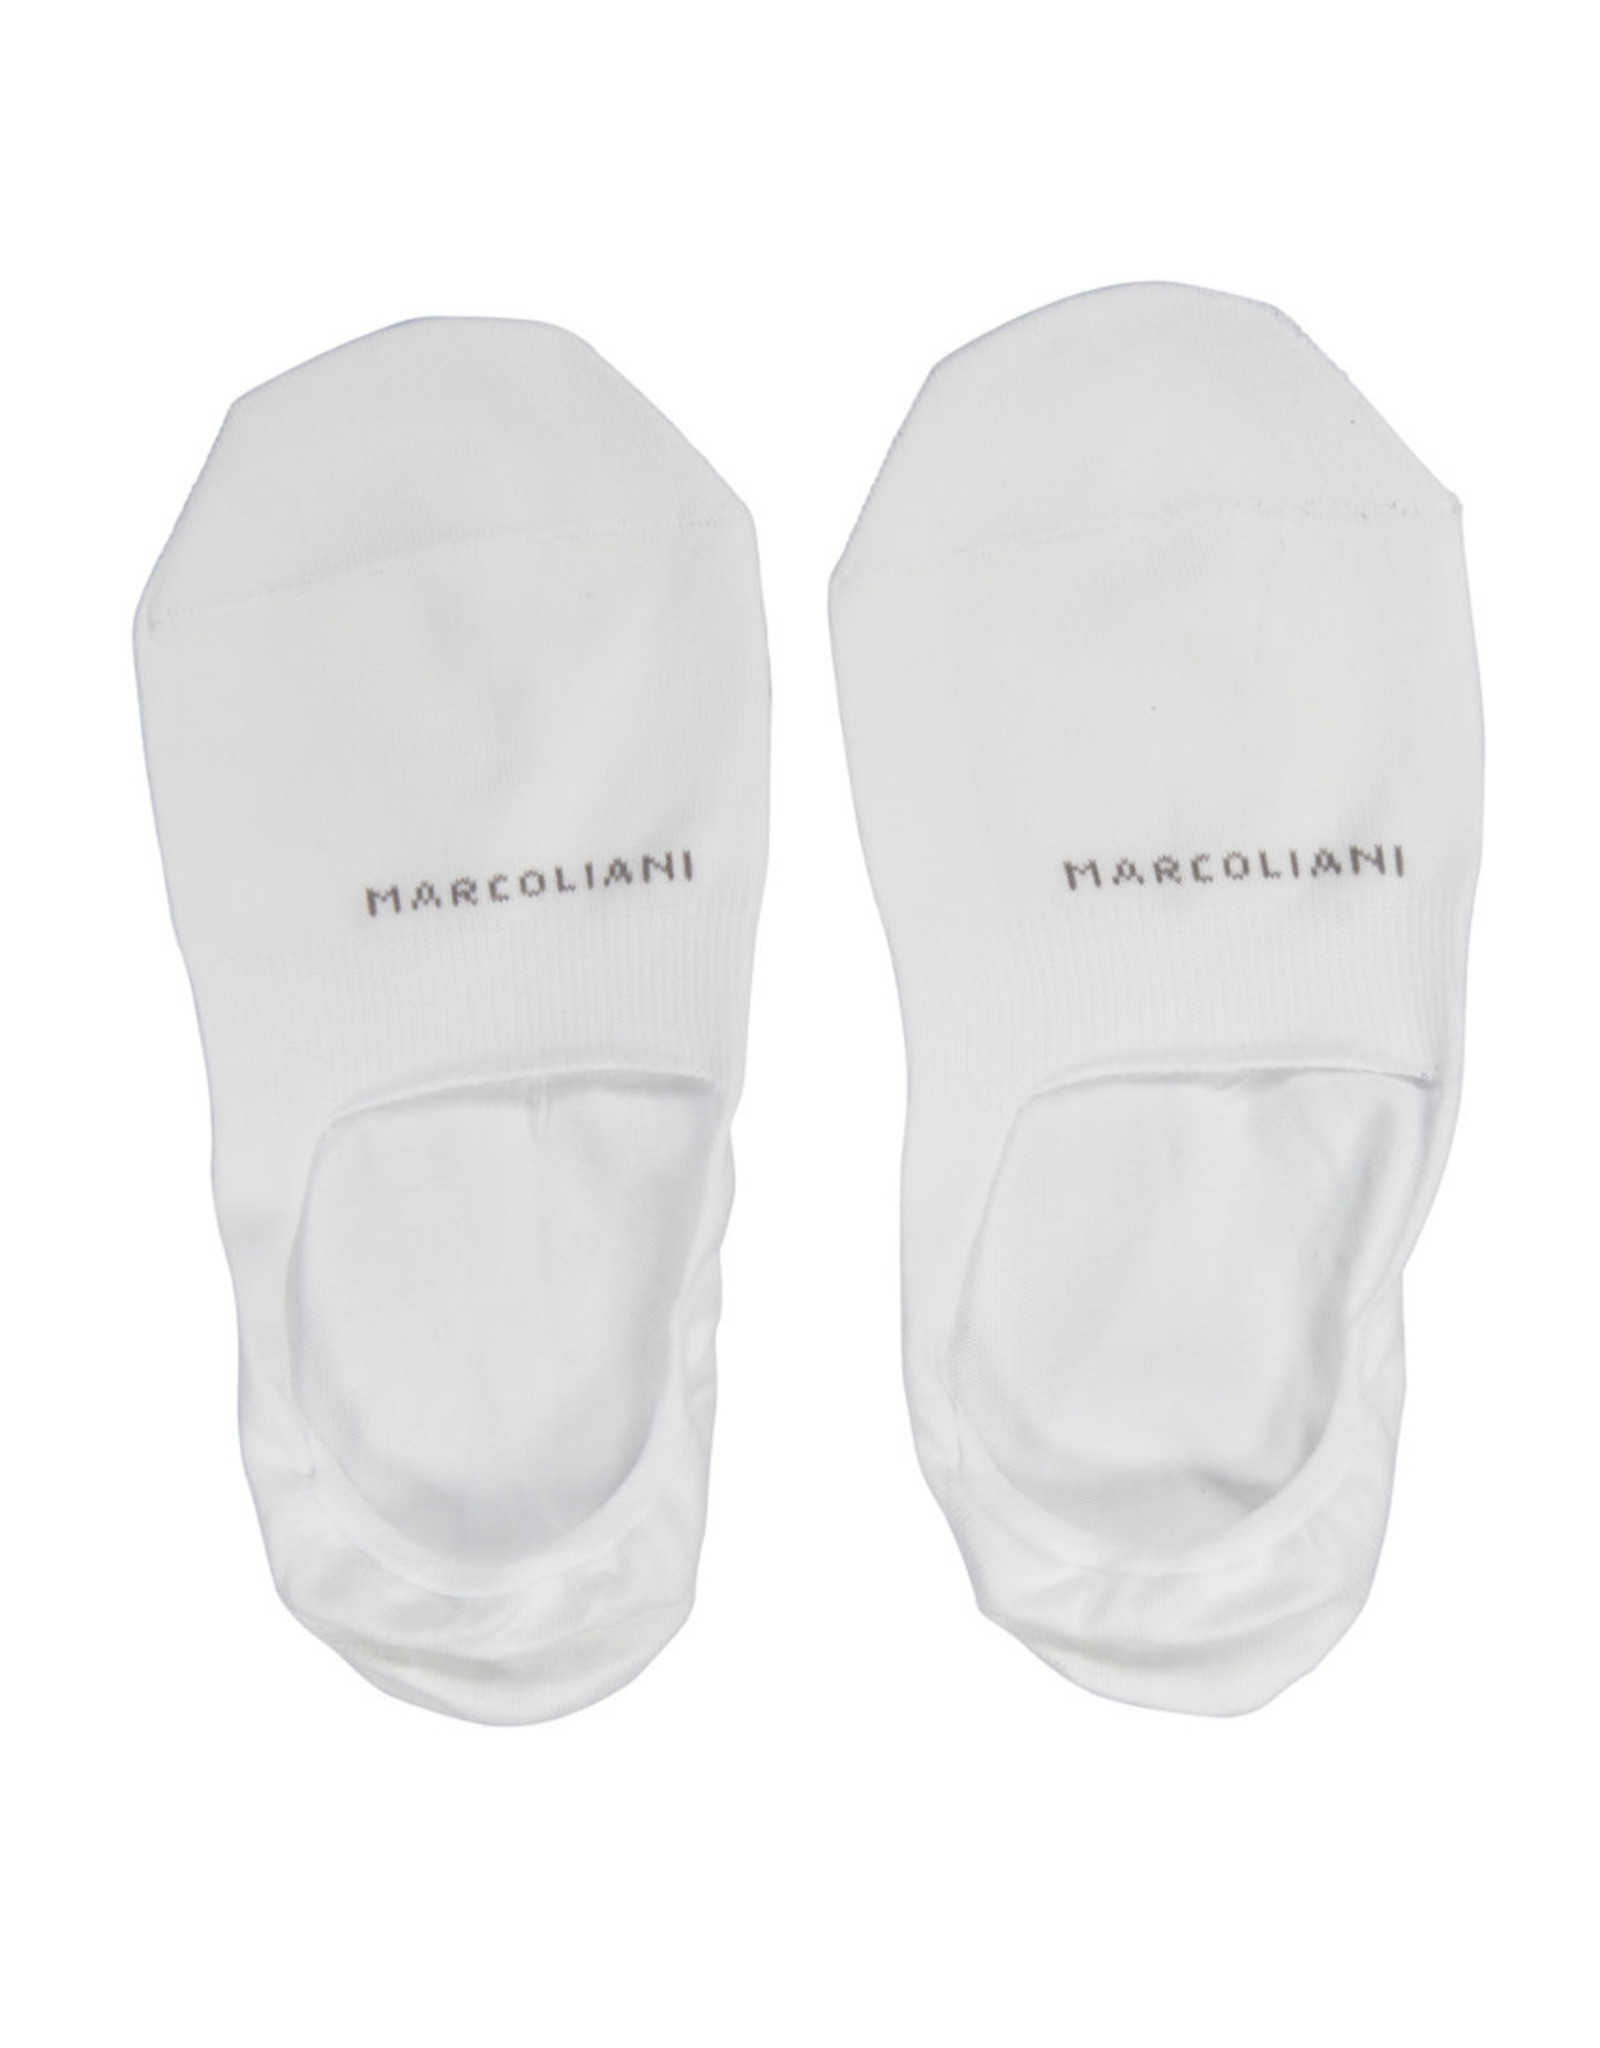 Marcoliani Marcoliani socks white invisible